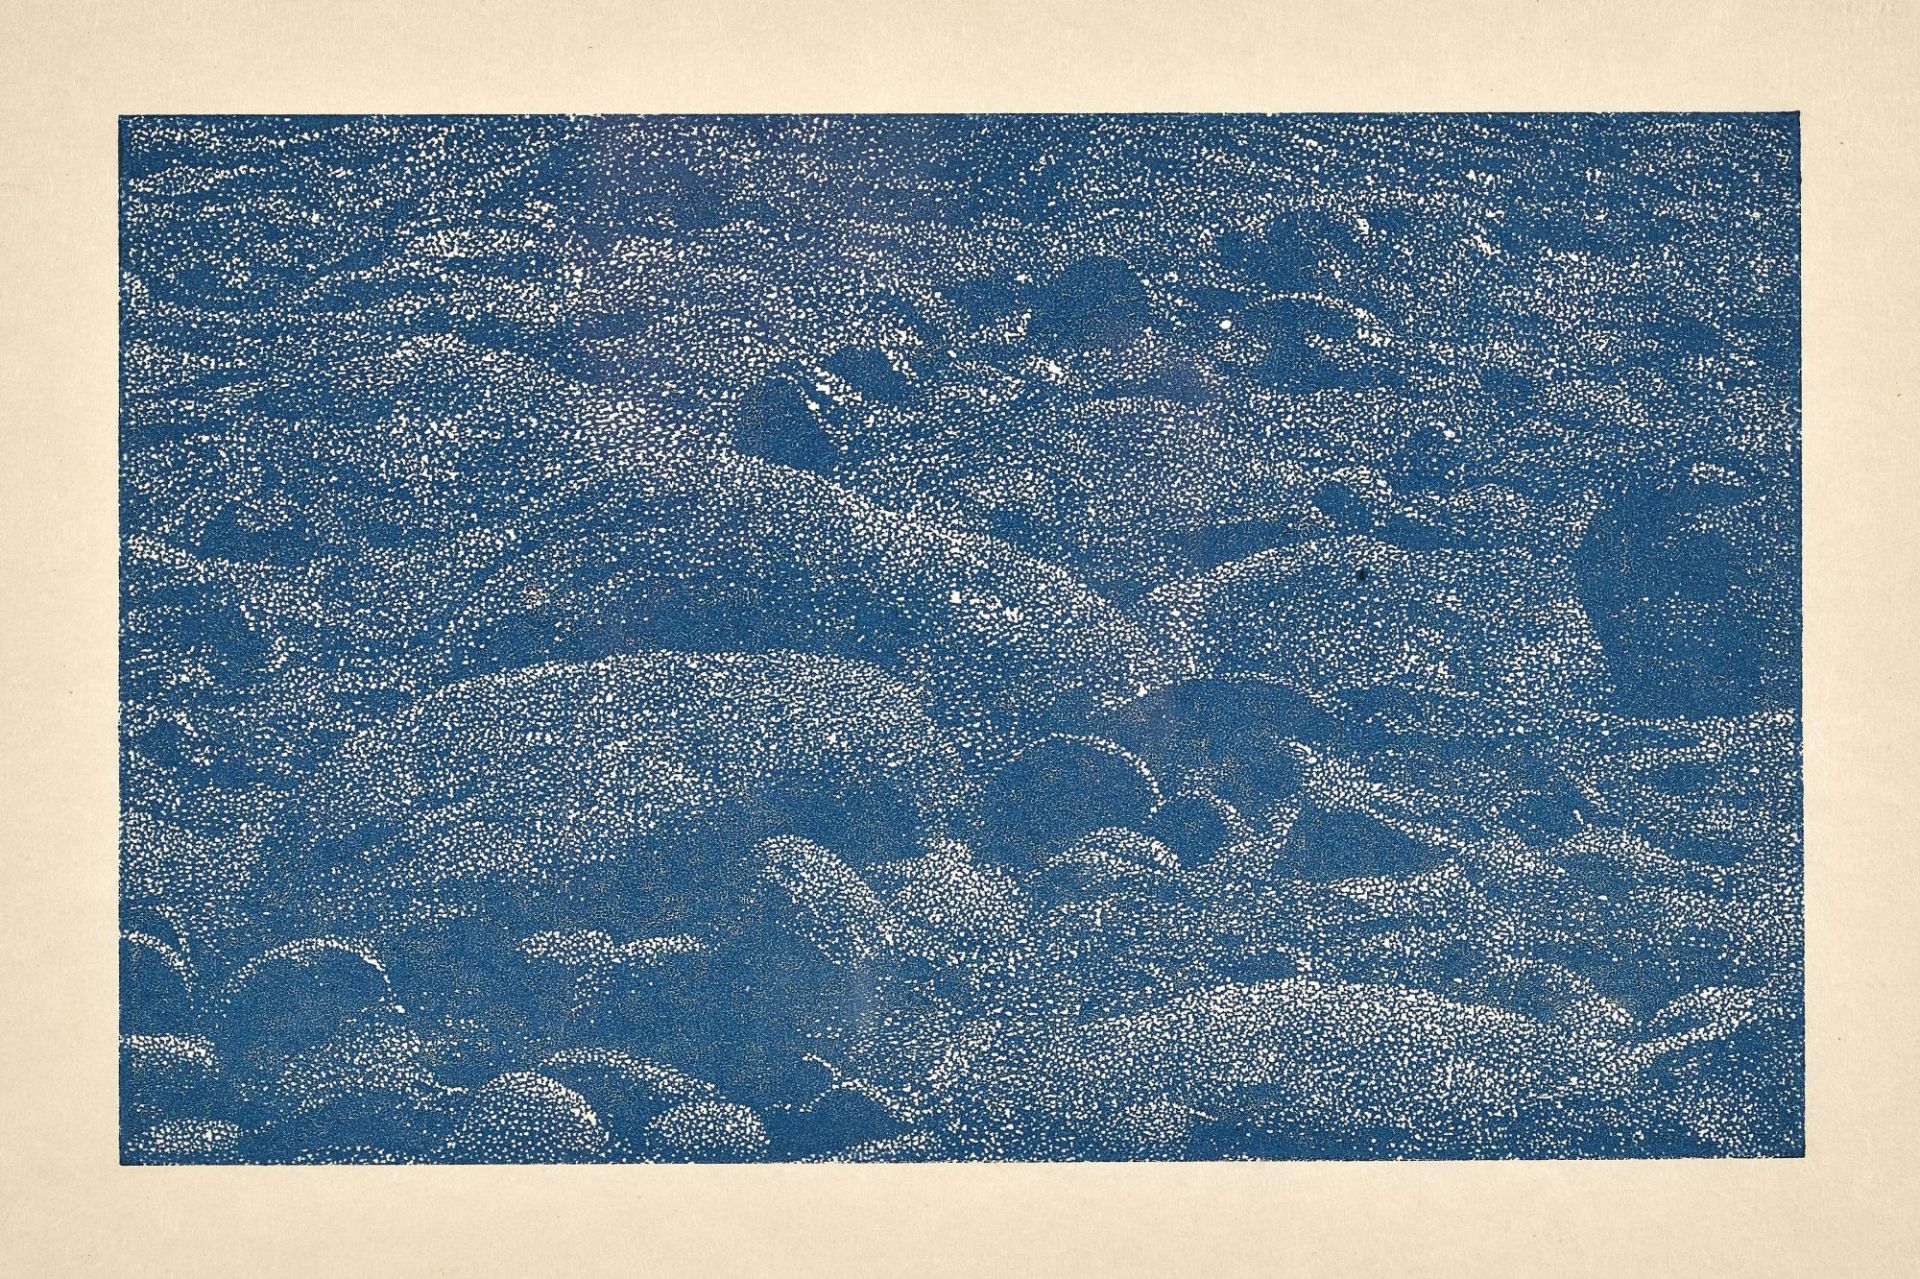 GERTSCH, FRANZ: "Cima del Mar", Detail II.